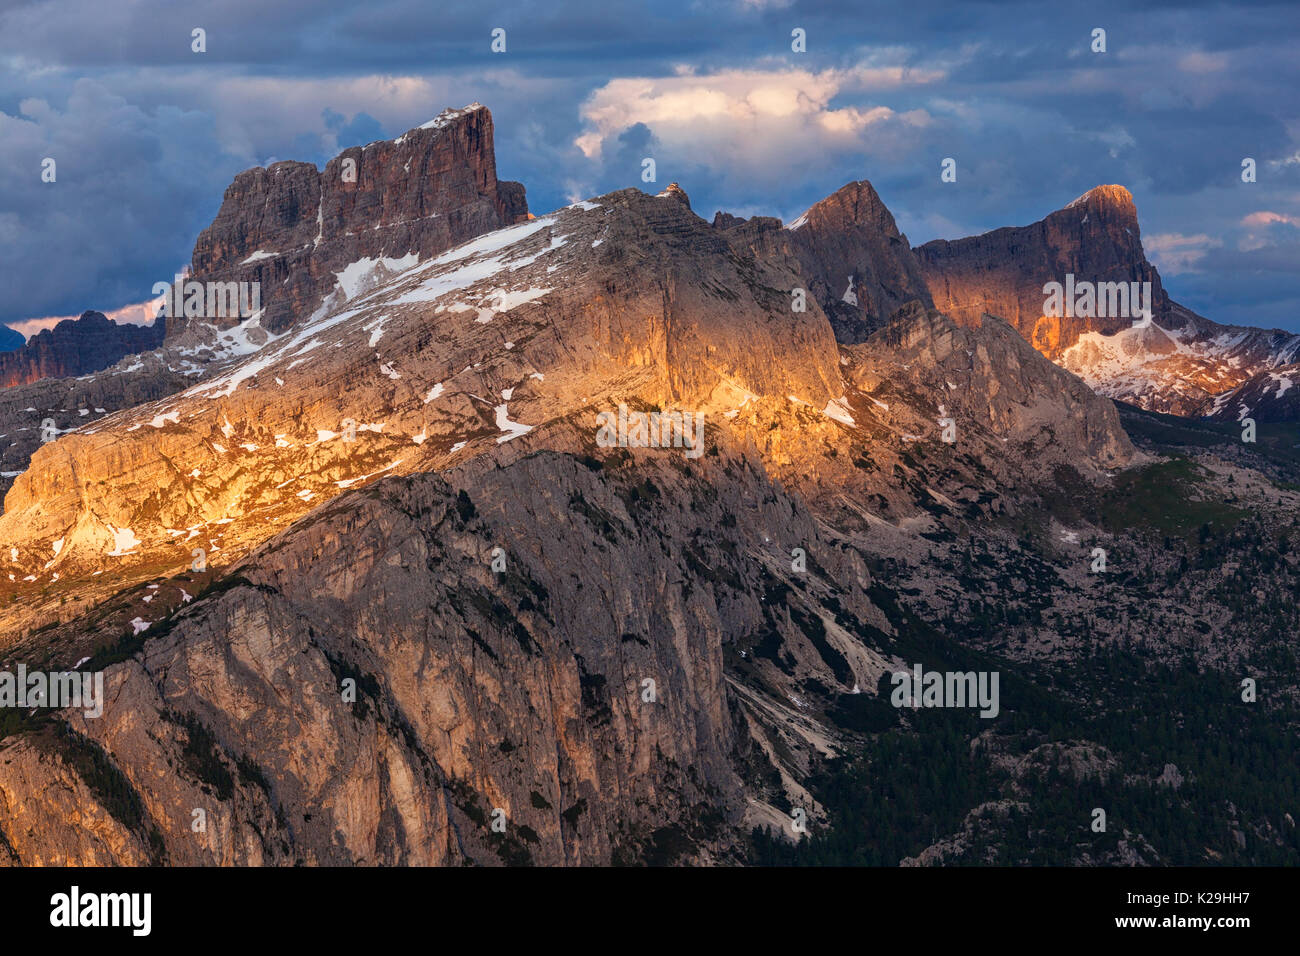 Il gruppo Nuvolao da Setsass, Ampezzo Dolomiti, Cortina d'Ampezzo, Belluno, Veneto, Italia. Foto Stock